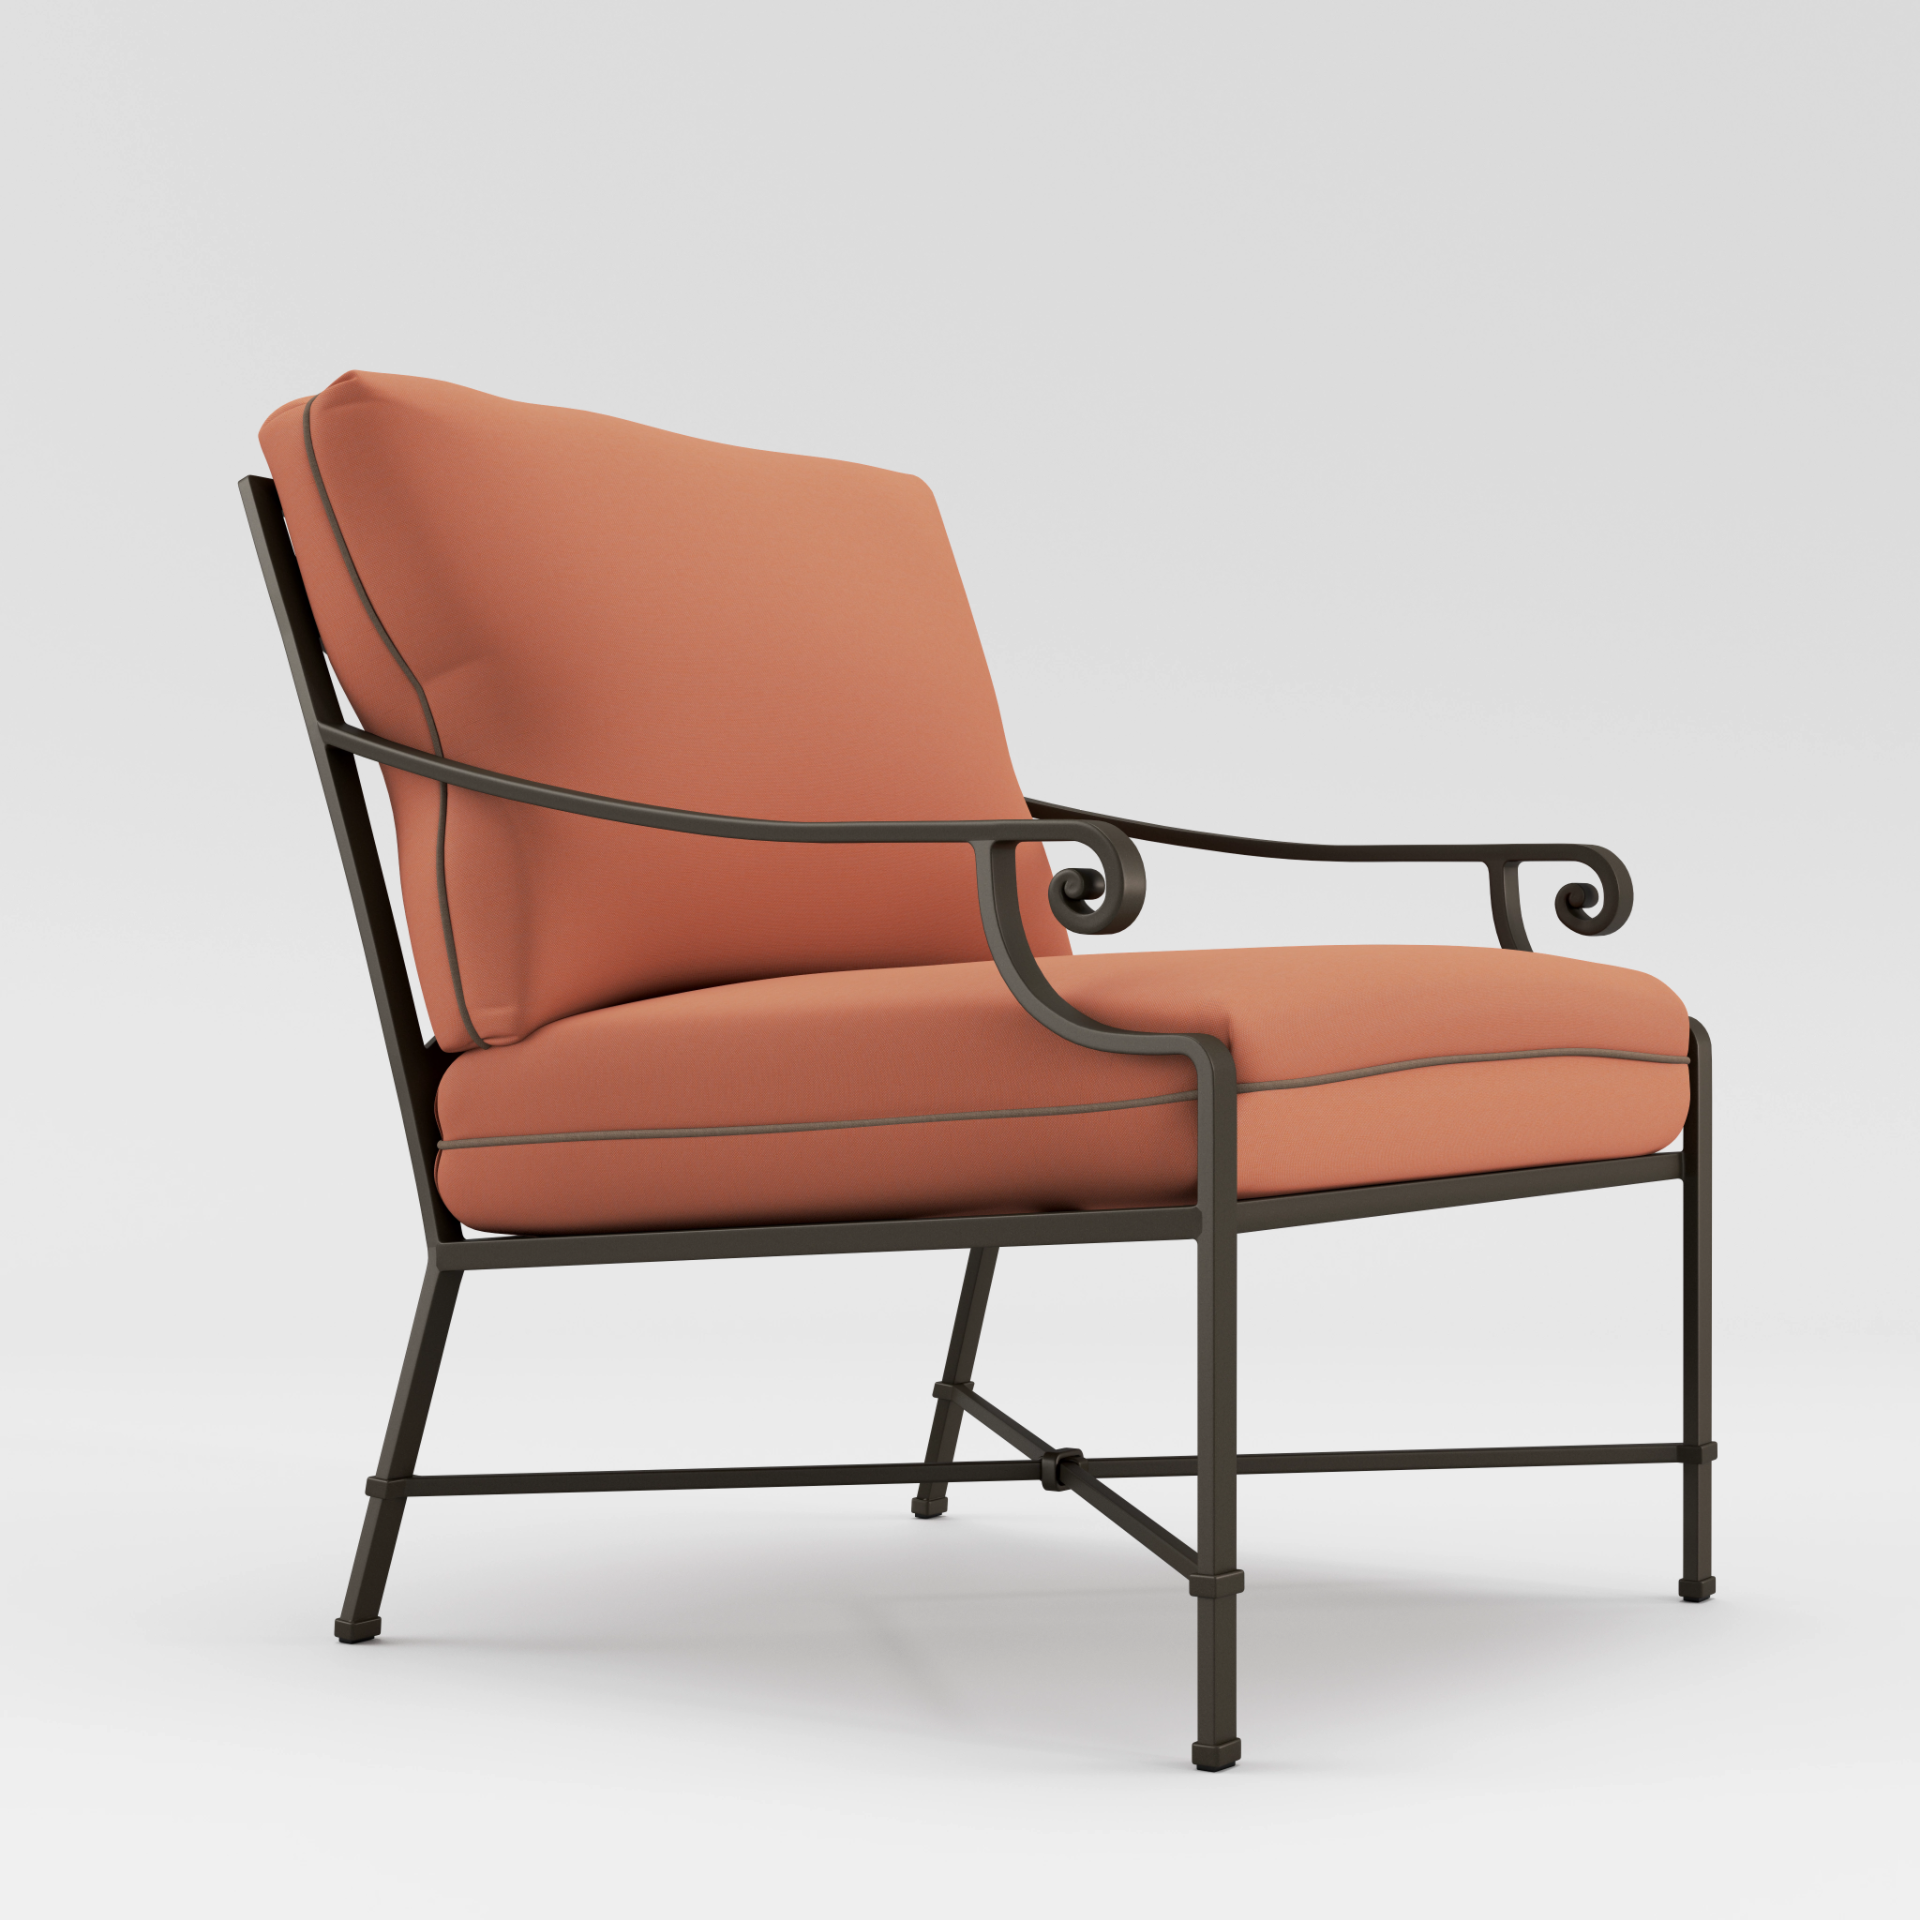 Venetian Lounge Chair by Brown Jordan